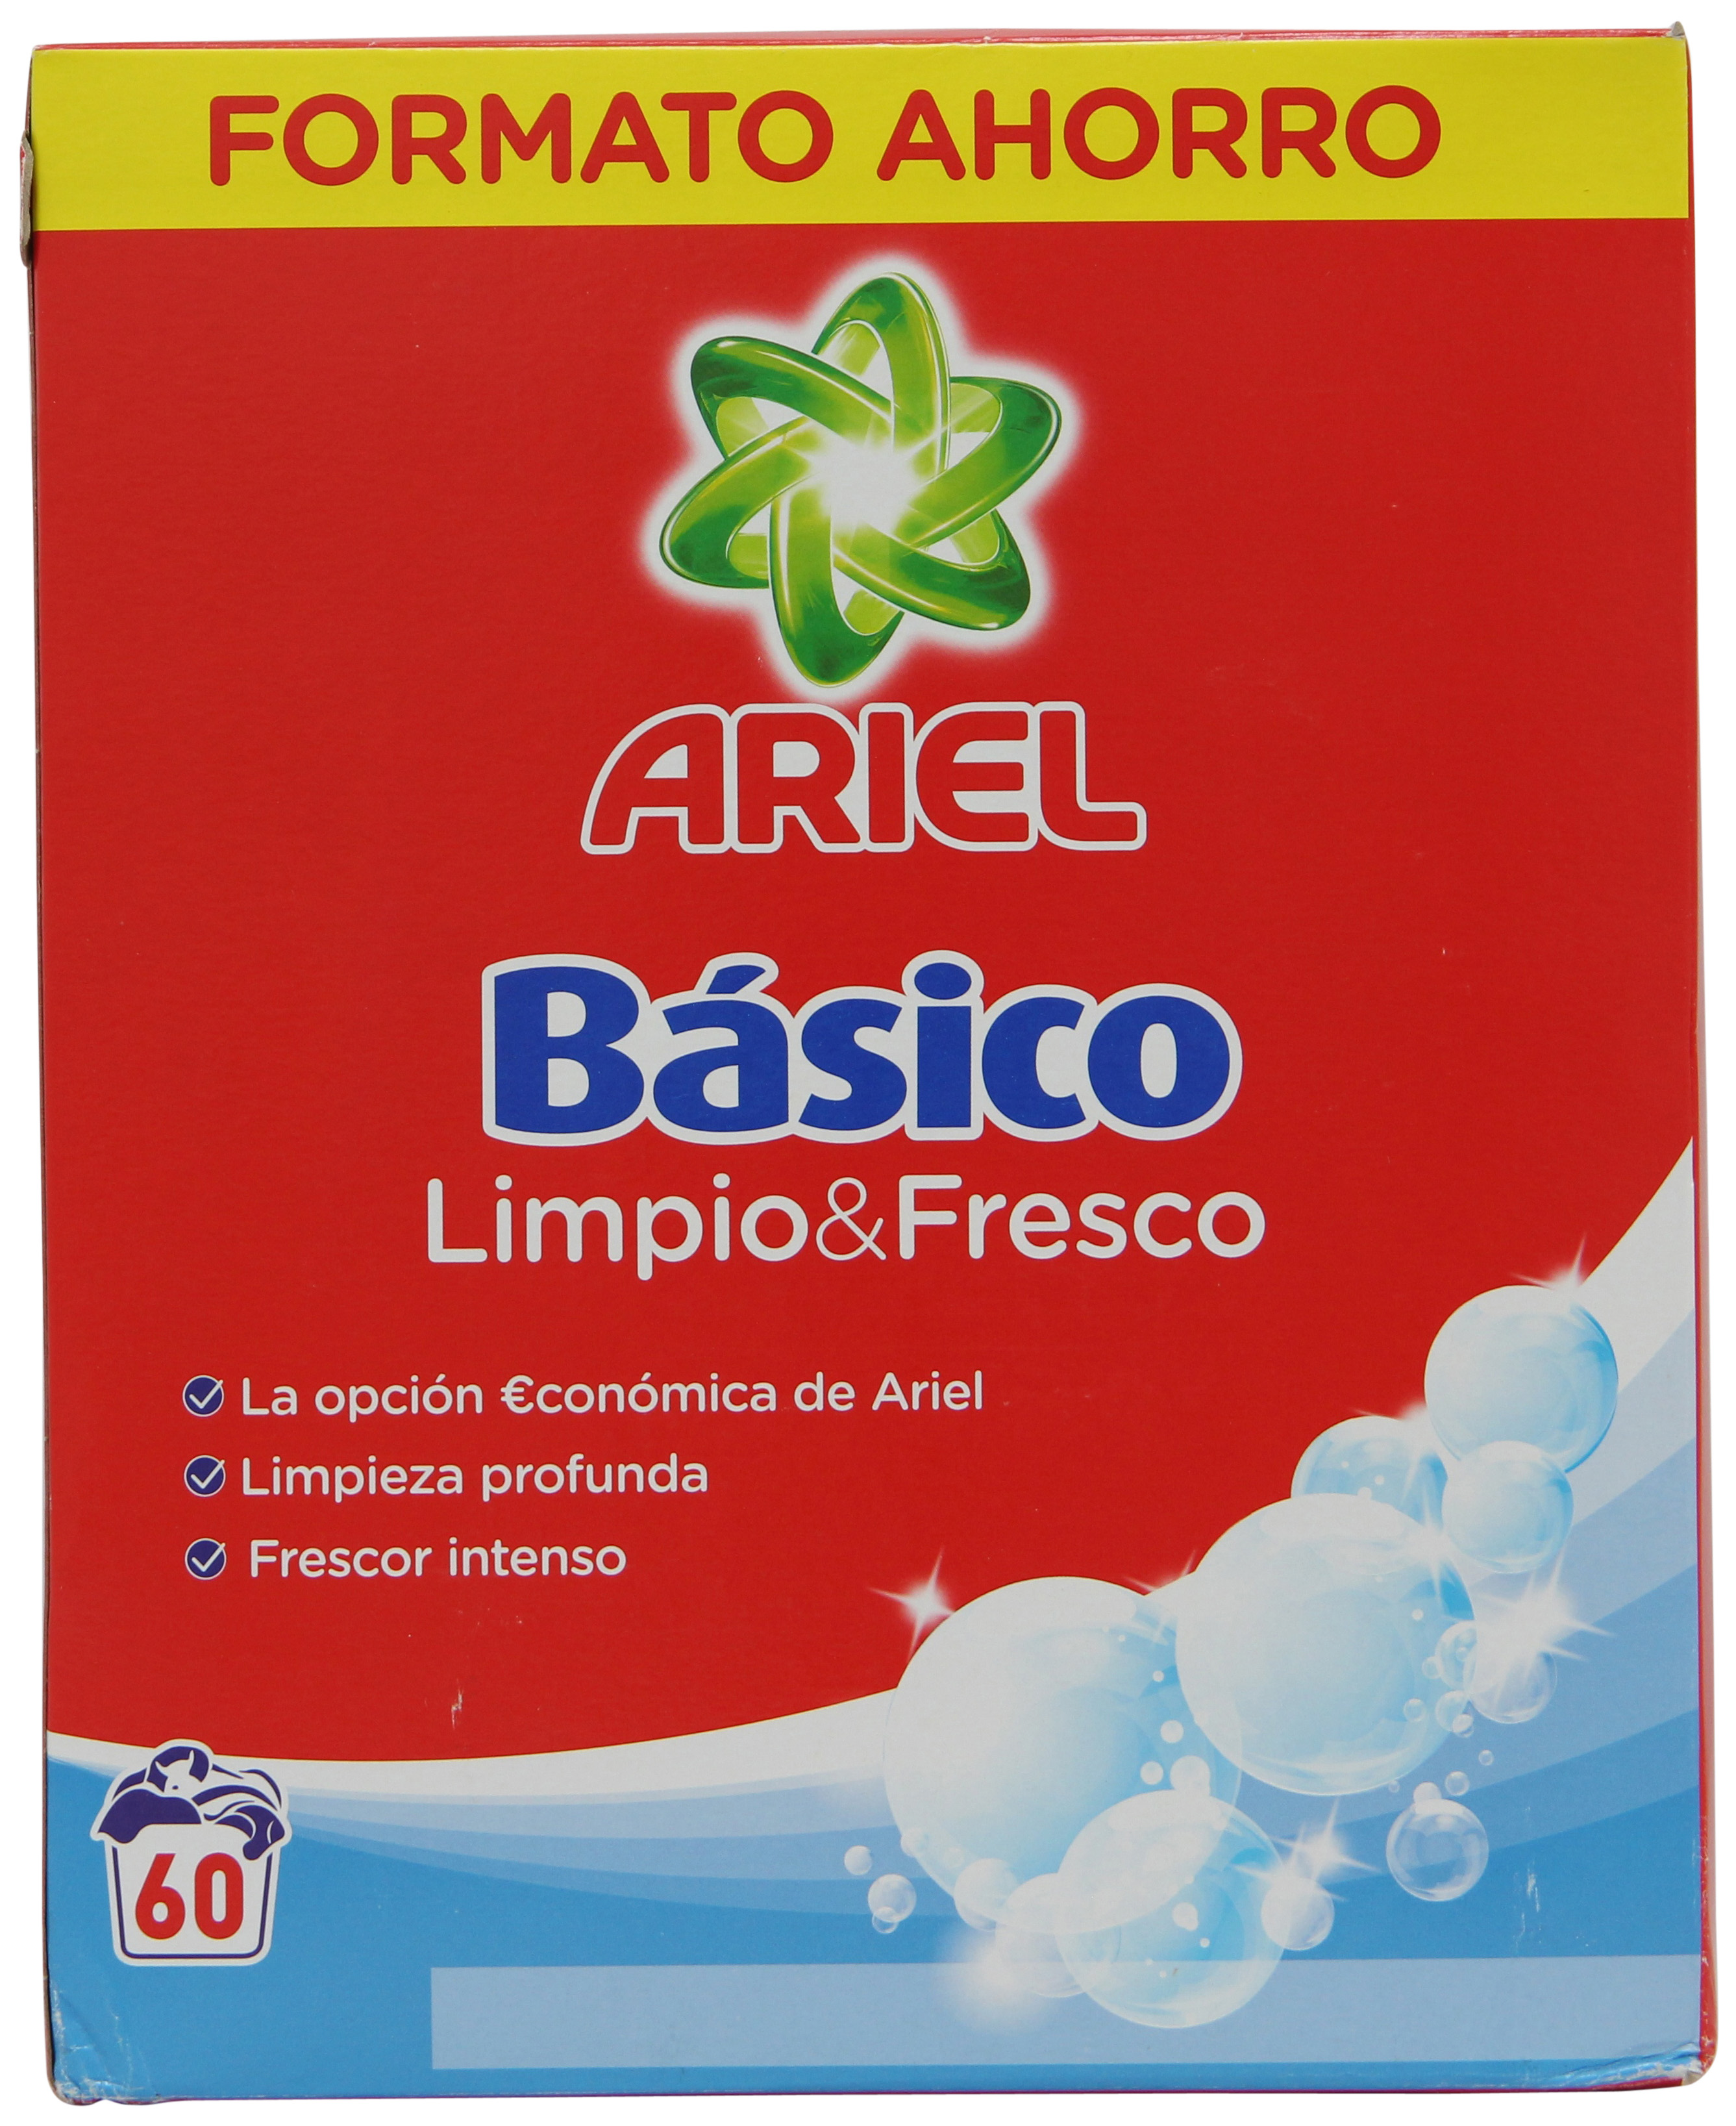 BÁSICO LIMPIO&FRESCO